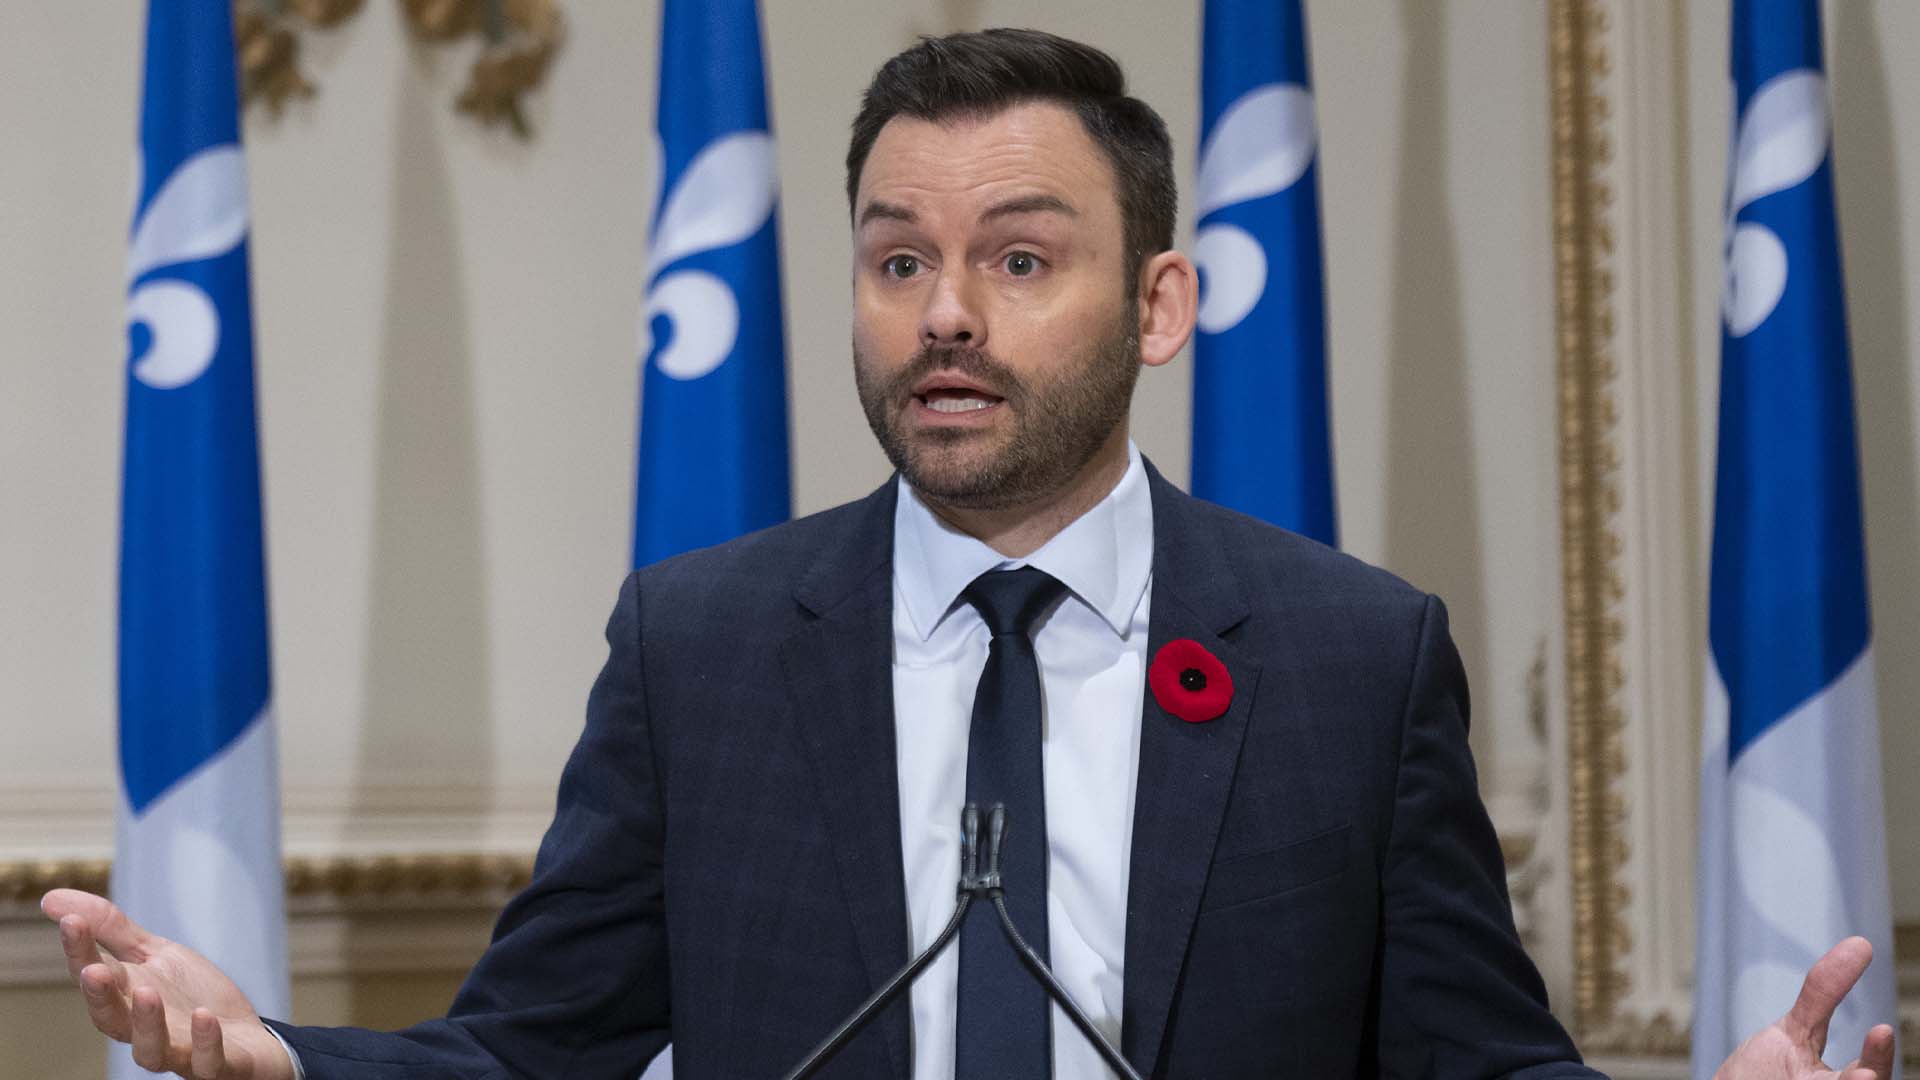 Le chef du Parti québécois, Paul St-Pierre Plamondon, répond aux questions des journalistes sur sa participation à une élection partielle, le mardi 9 novembre 2021, à l'Assemblée législative de Québec.